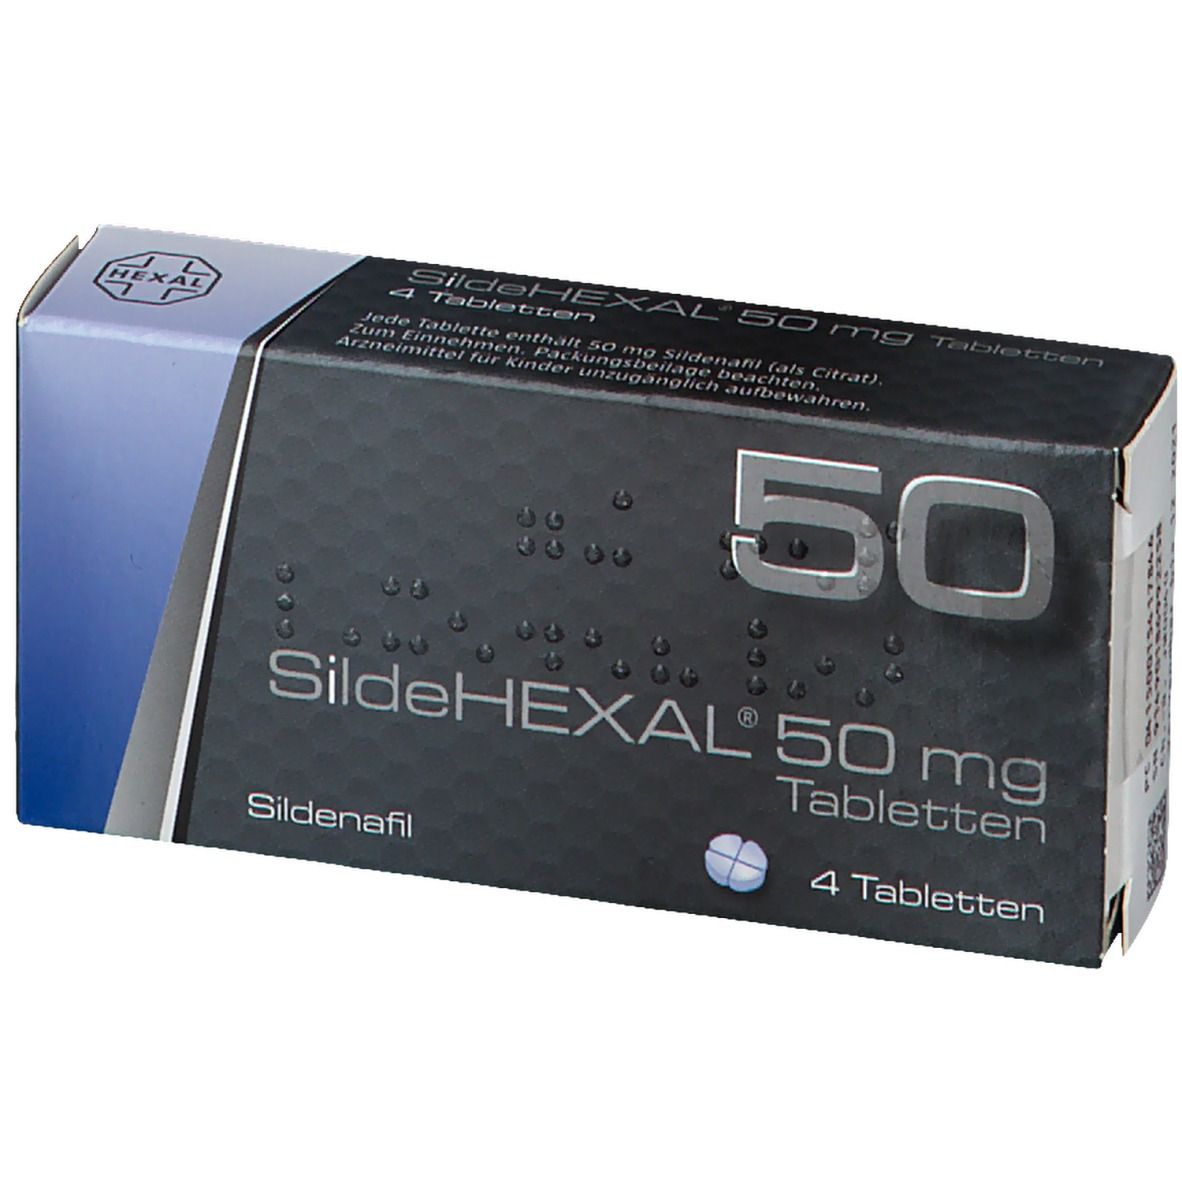 SildeHEXAL® 50 mg